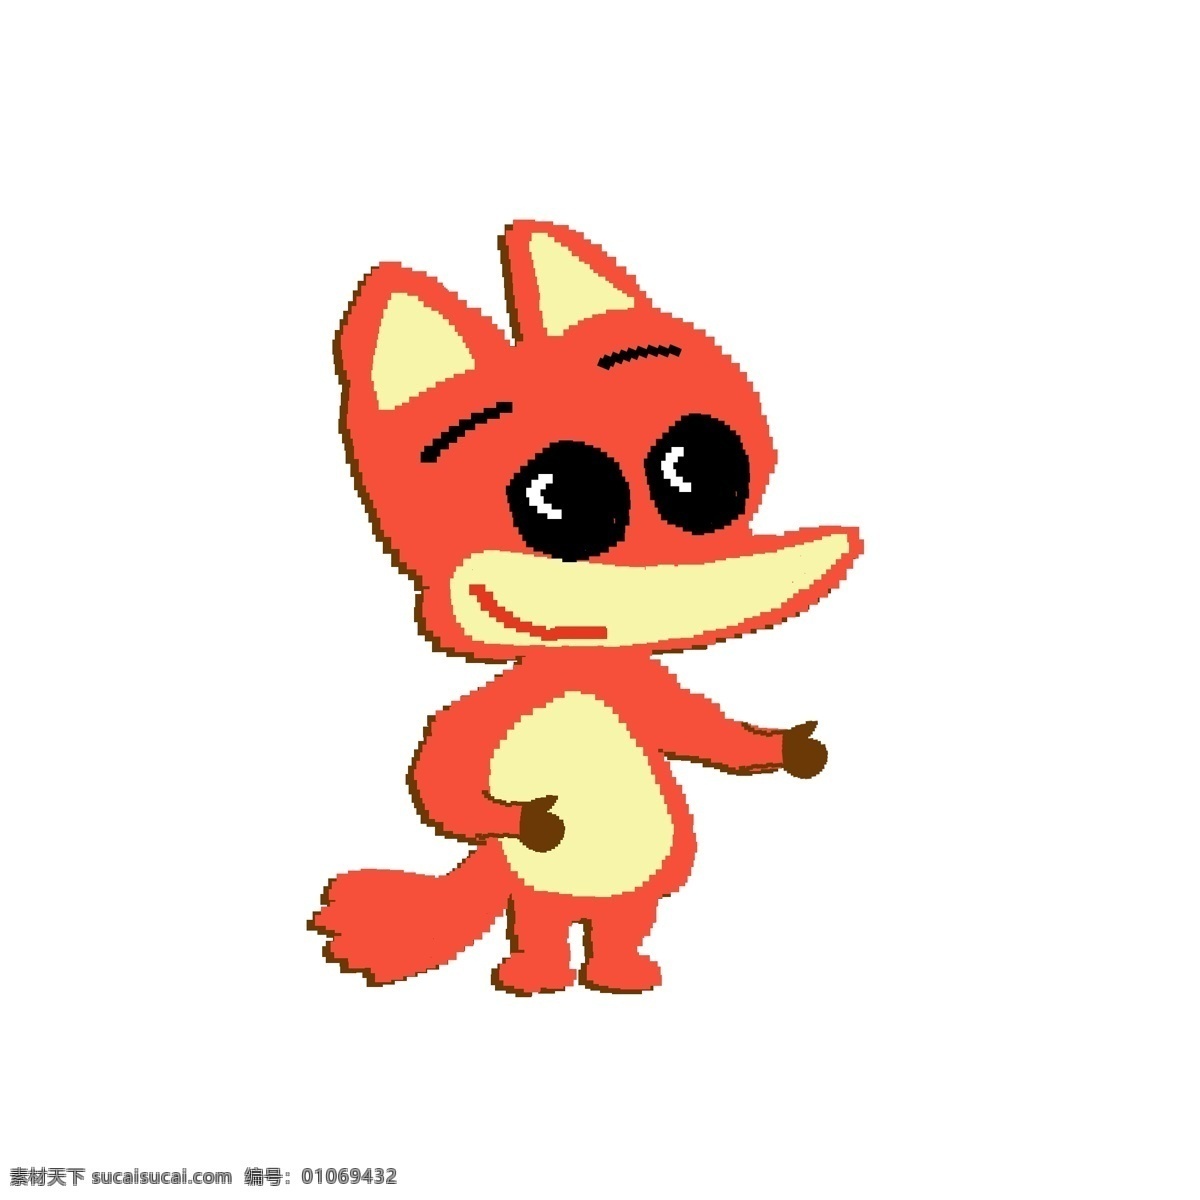 像素 化 只 小 狐狸 卡通 手绘 商用 元素 动物 森林动物 插画 萌 像素化 小狐狸 psd设计